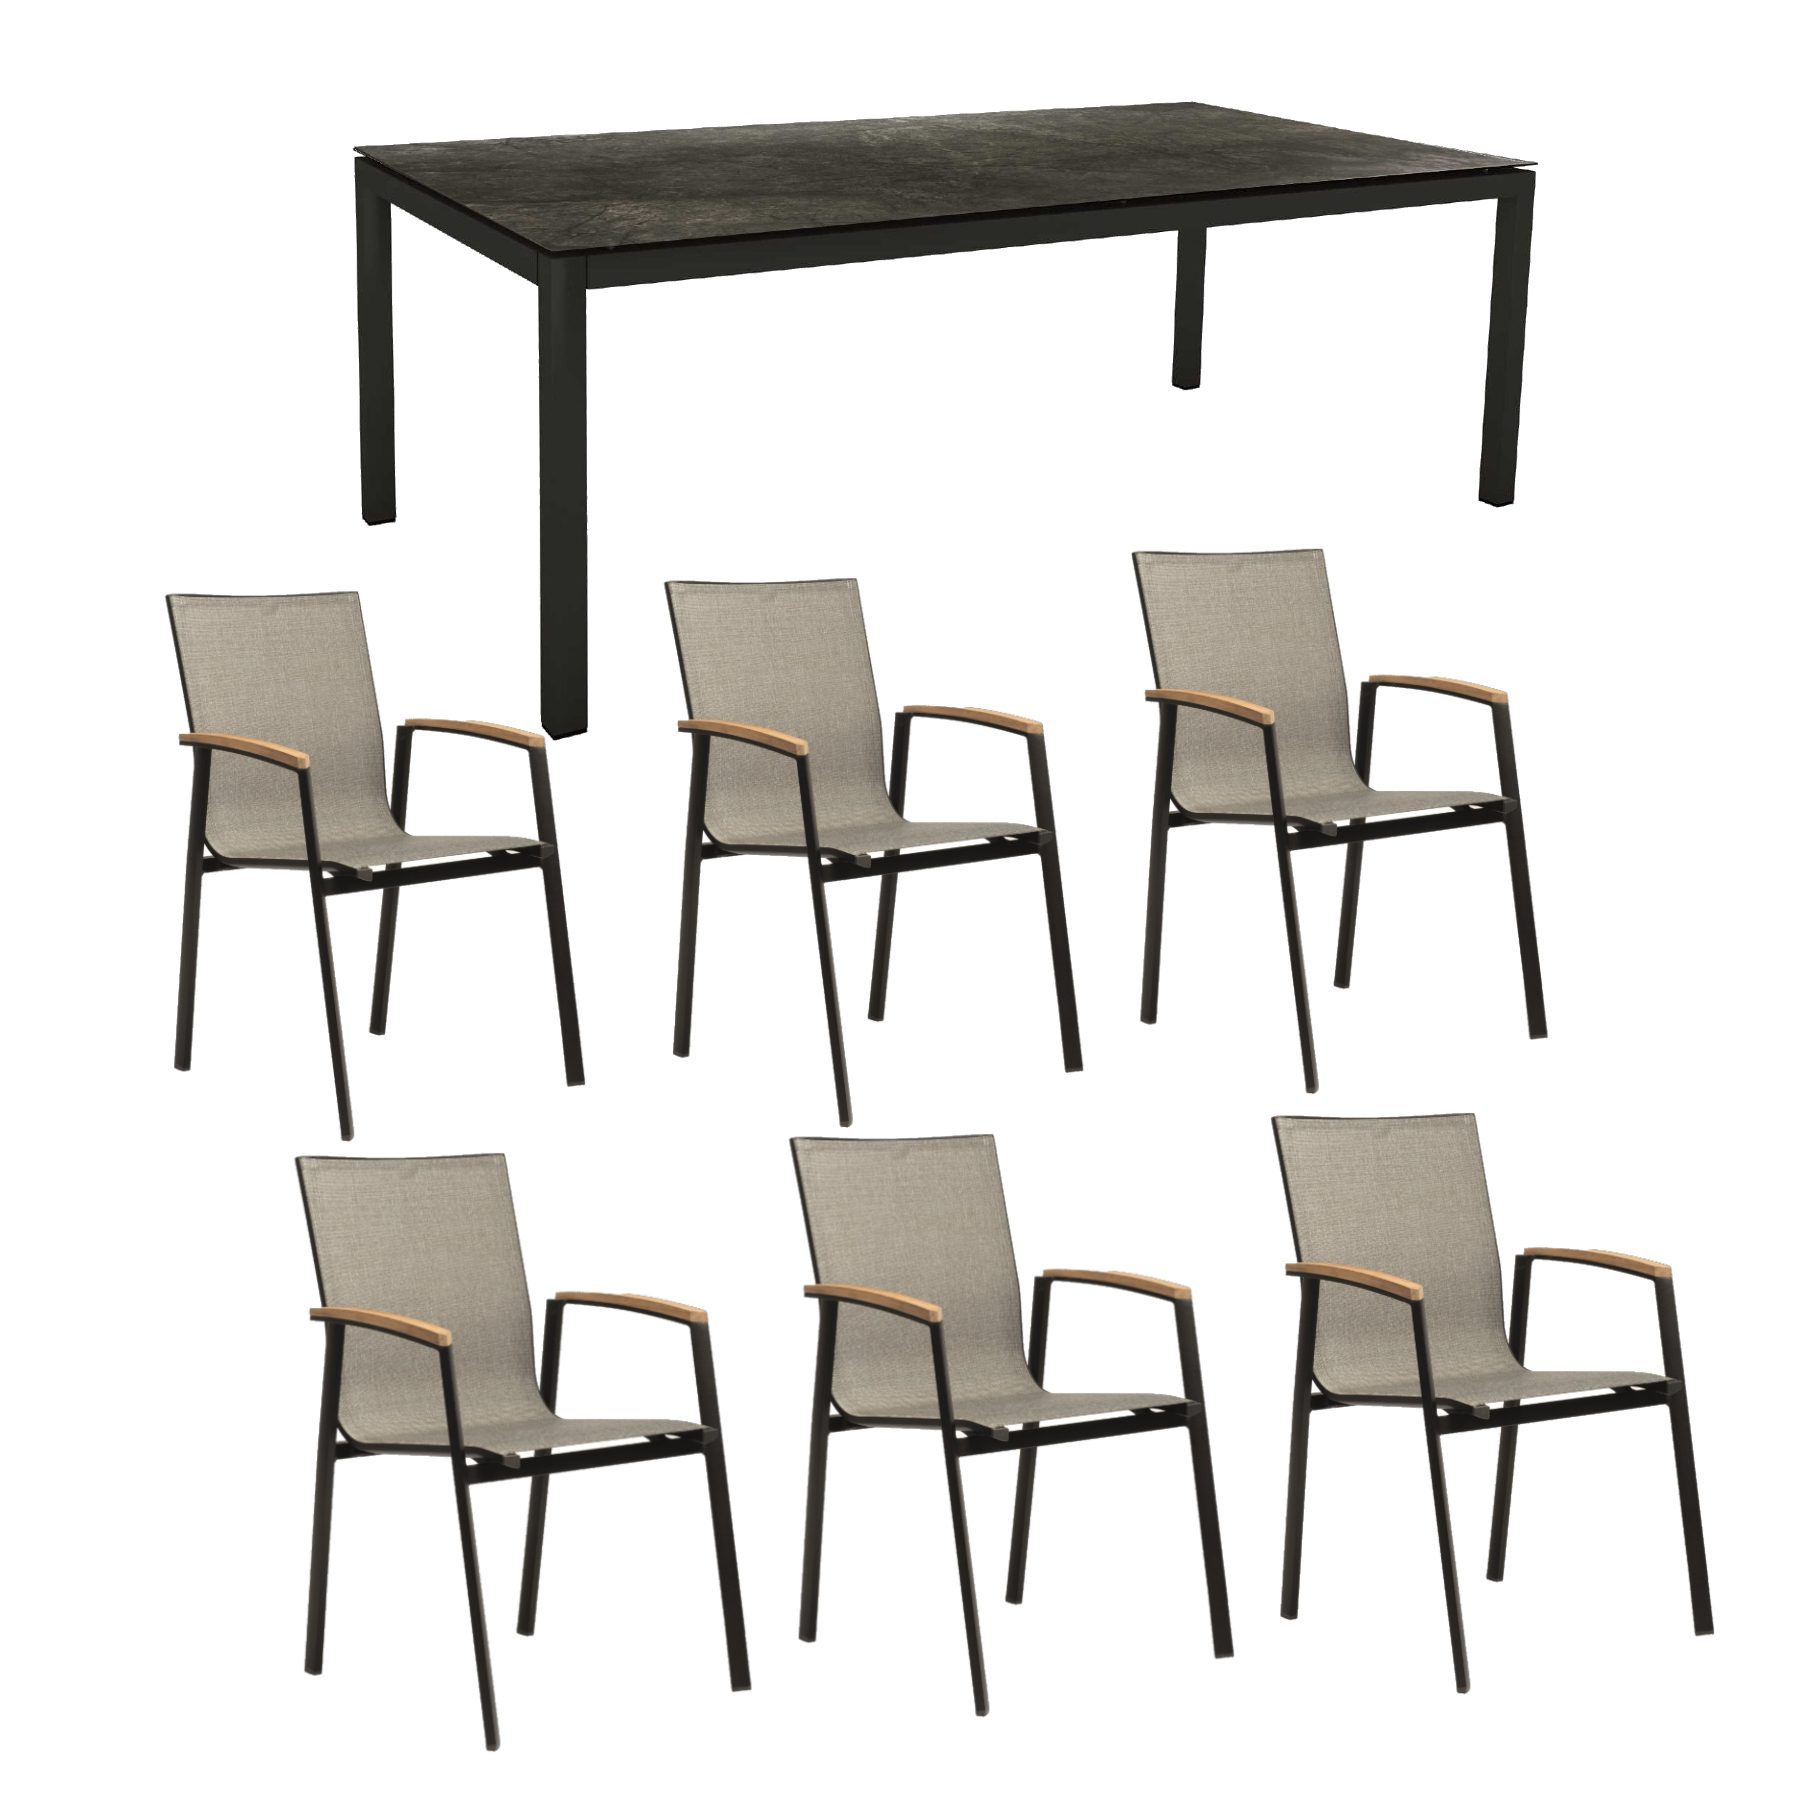 Stern Gartenmöbel-Set mit Stuhl "New Top“ und Gartentisch Aluminium/HPL, Gestelle Aluminium schwarz matt, Sitz Textil Leinen grau, Tischplatte HPL Dark Marble